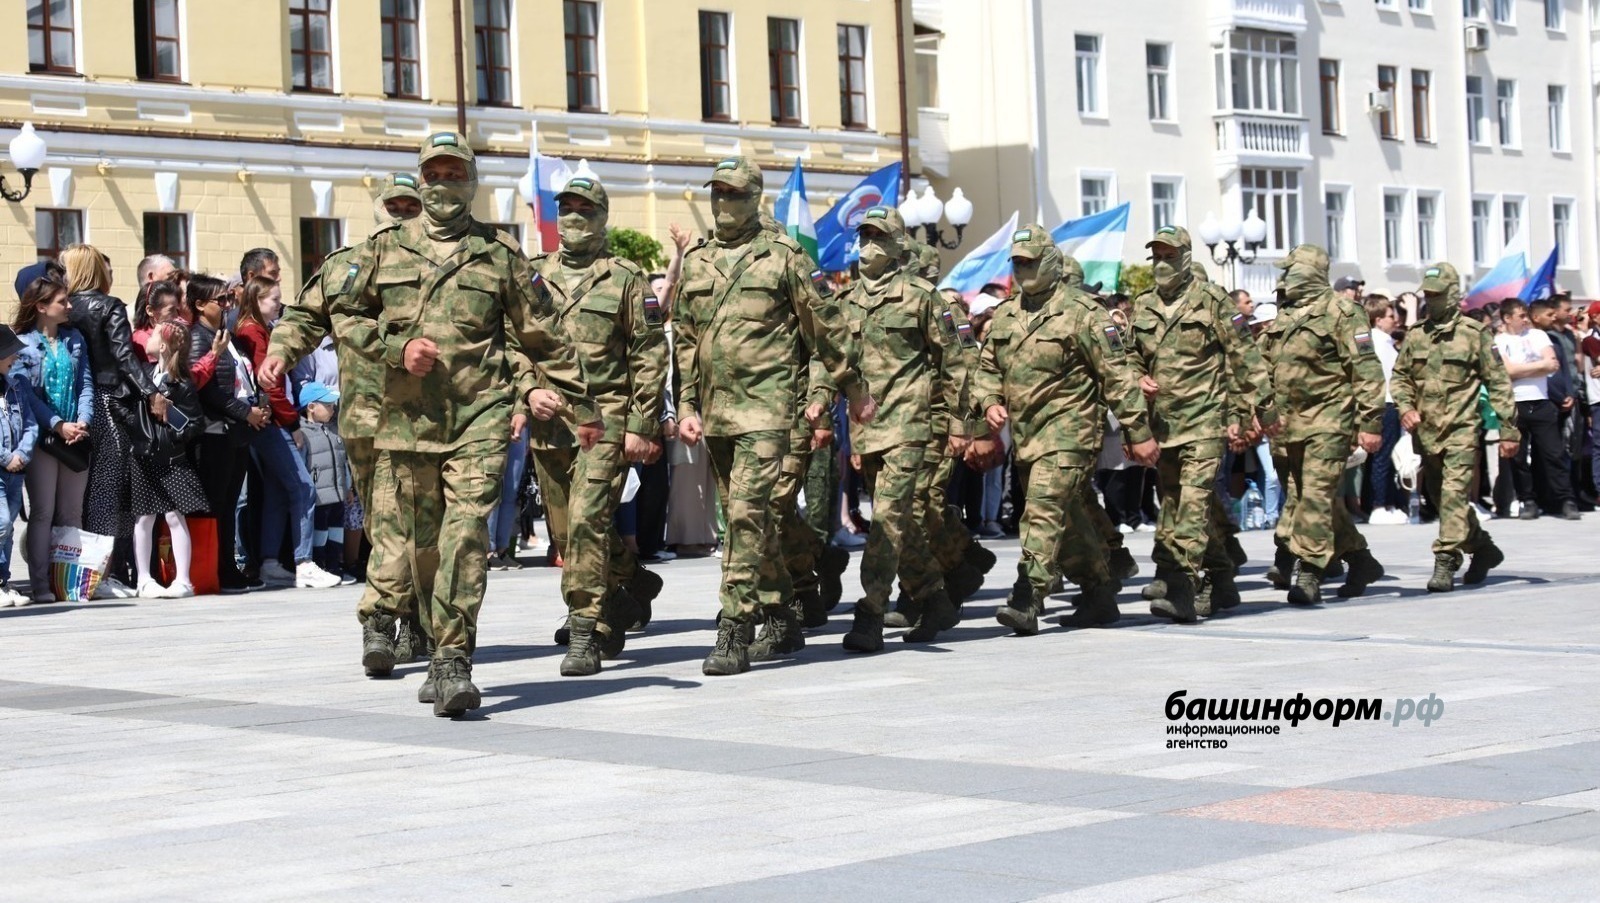 Глава Башкирии Радий Хабиров объяснил украинскому министру обороны, за что воюют башкиры